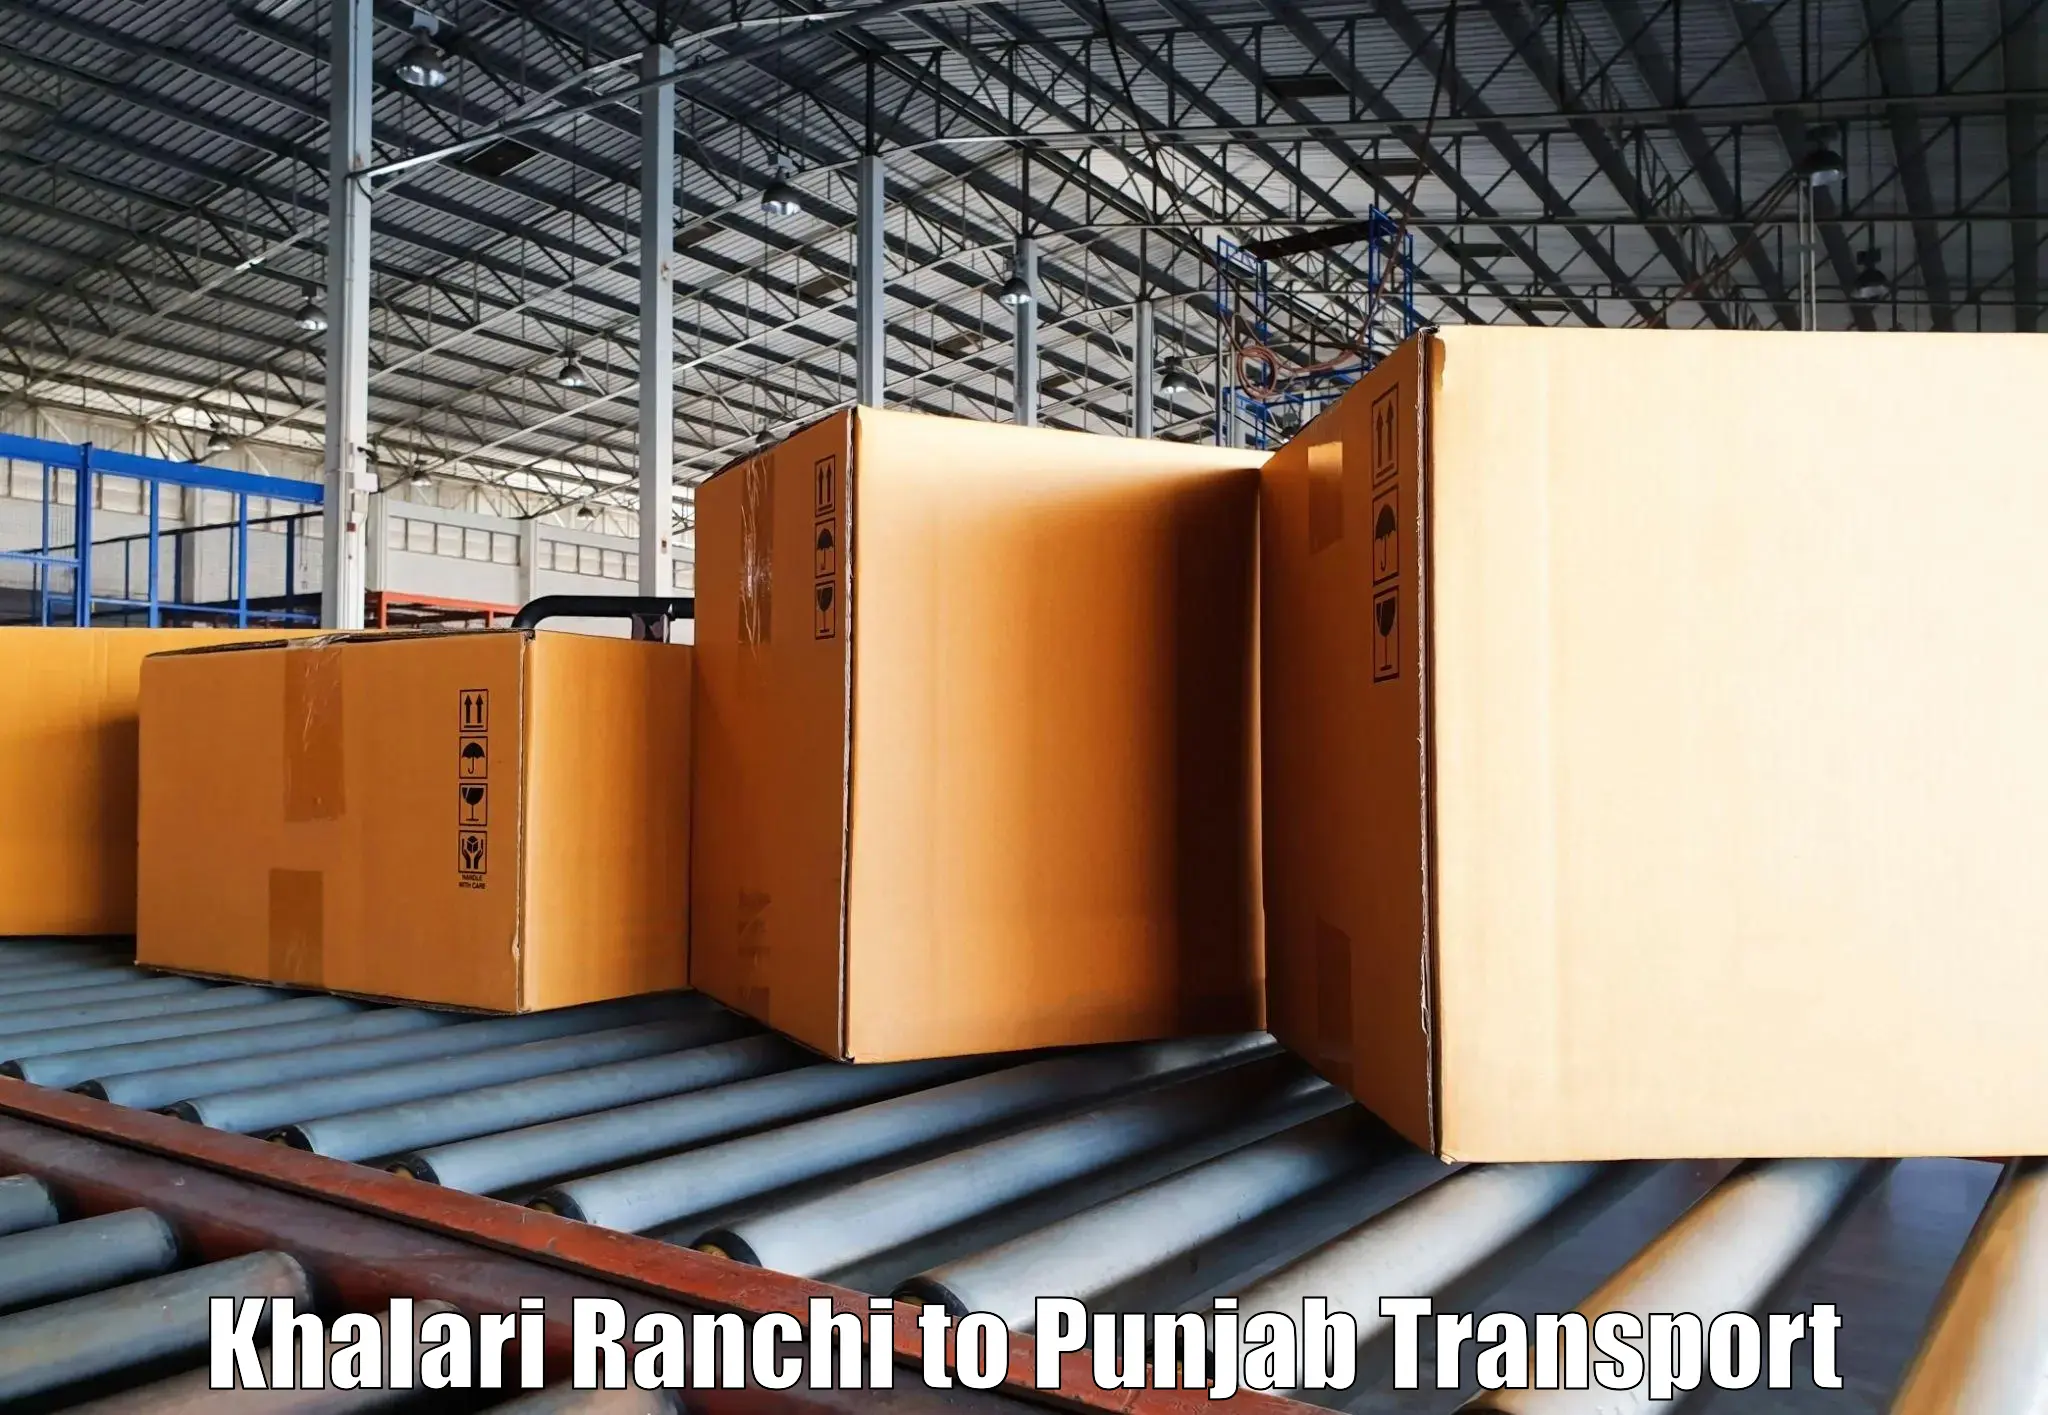 Land transport services Khalari Ranchi to Jalandhar